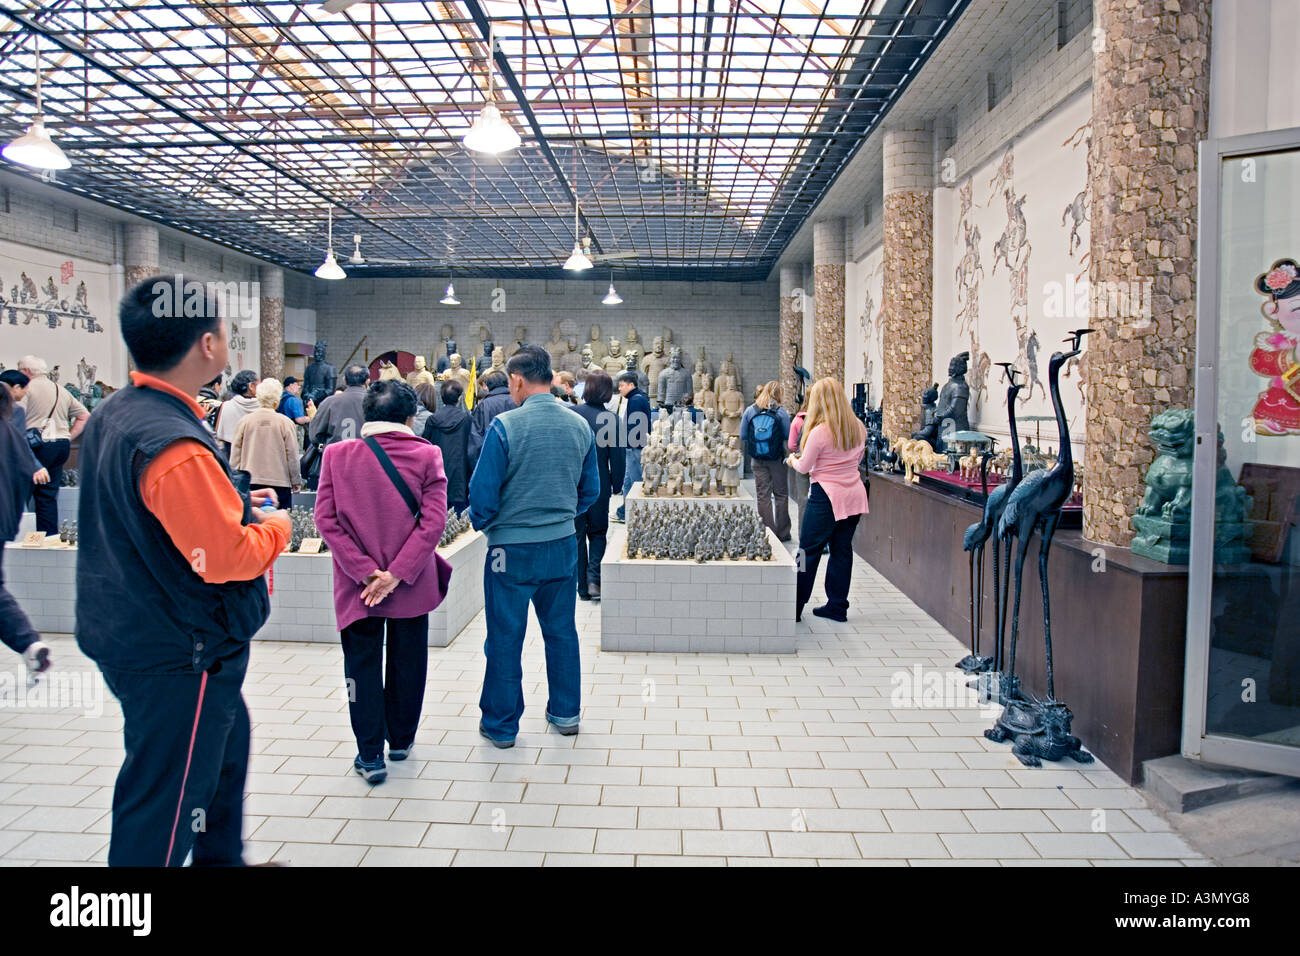 La CHINE XI'AN boutique de souvenirs et de vente d'usine des répliques de statues la trouvé sur le site de l'armée de guerriers de terre cuite Banque D'Images